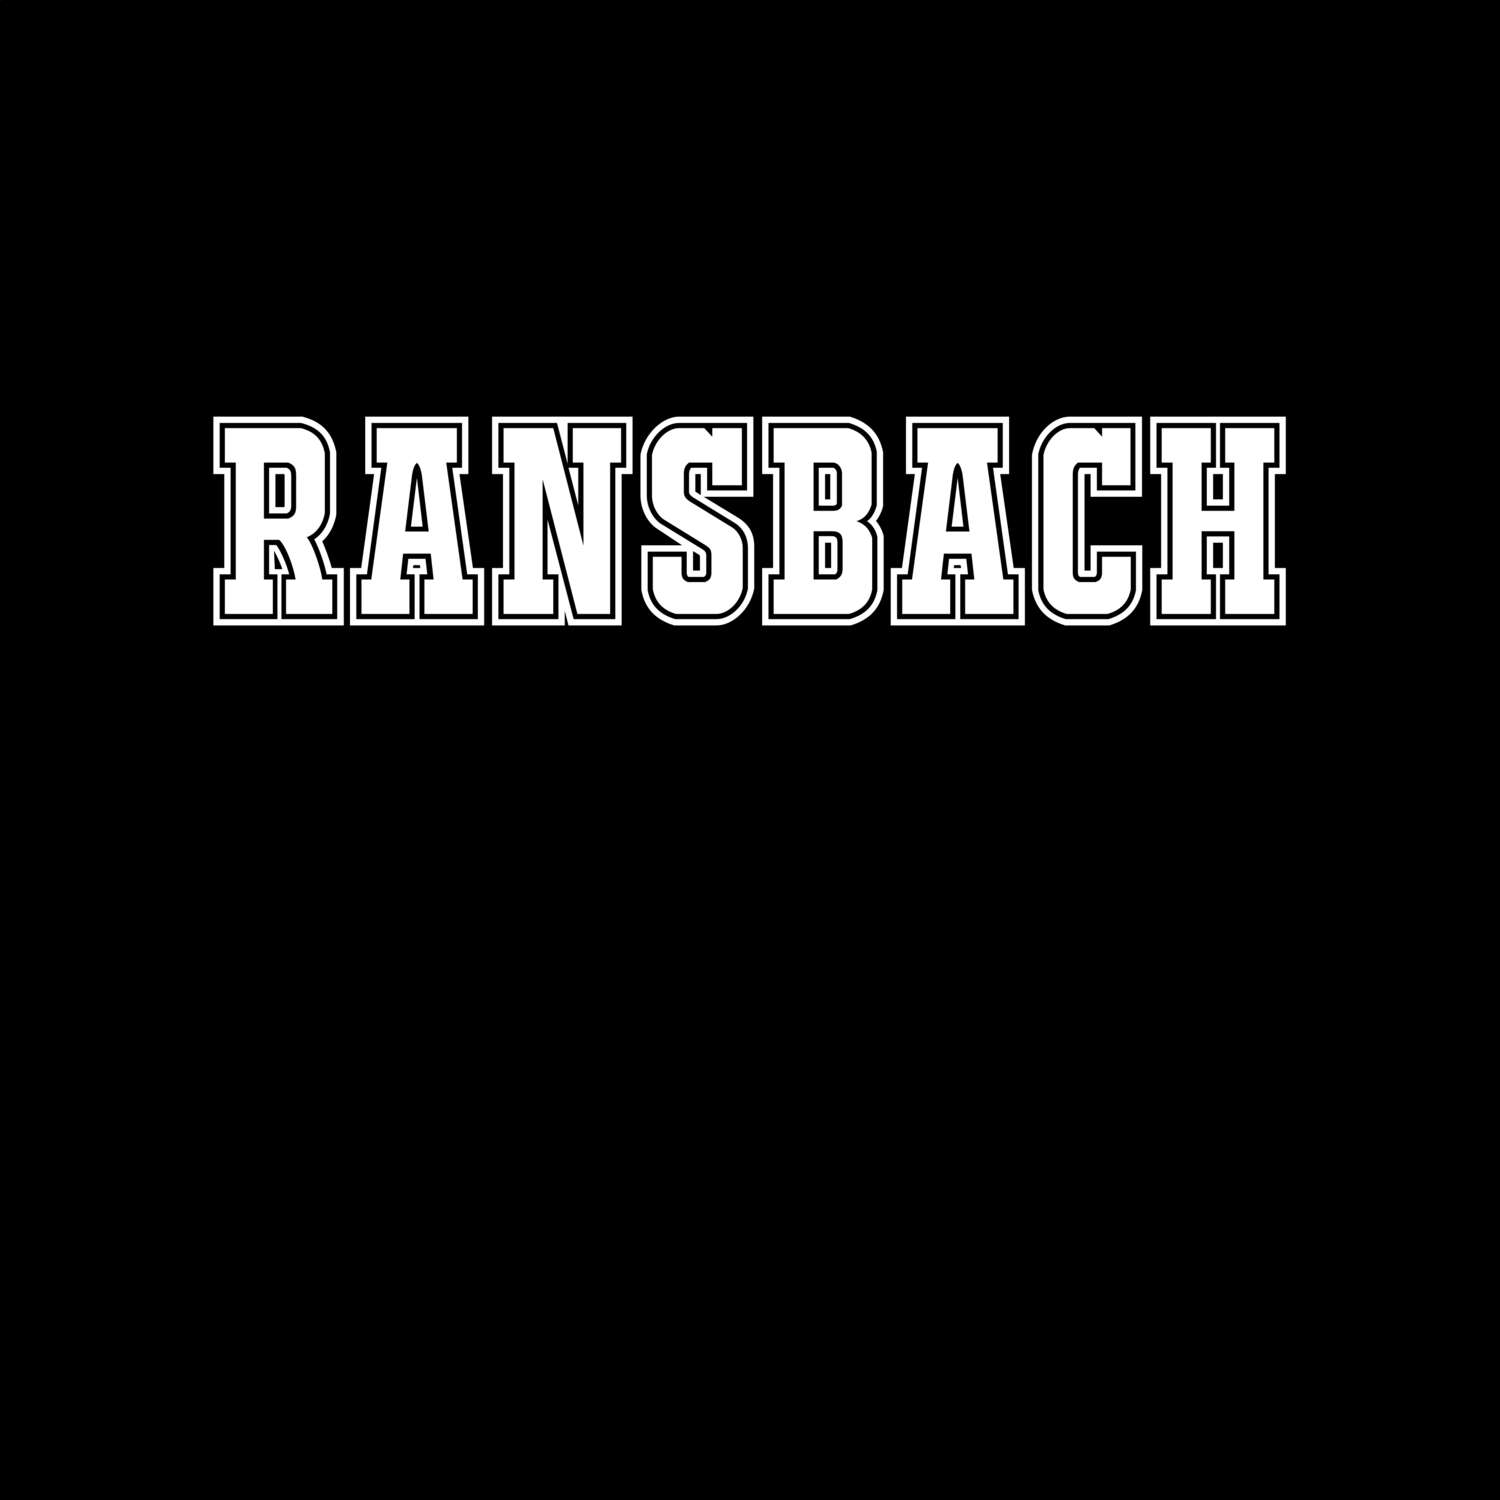 Ransbach T-Shirt »Classic«